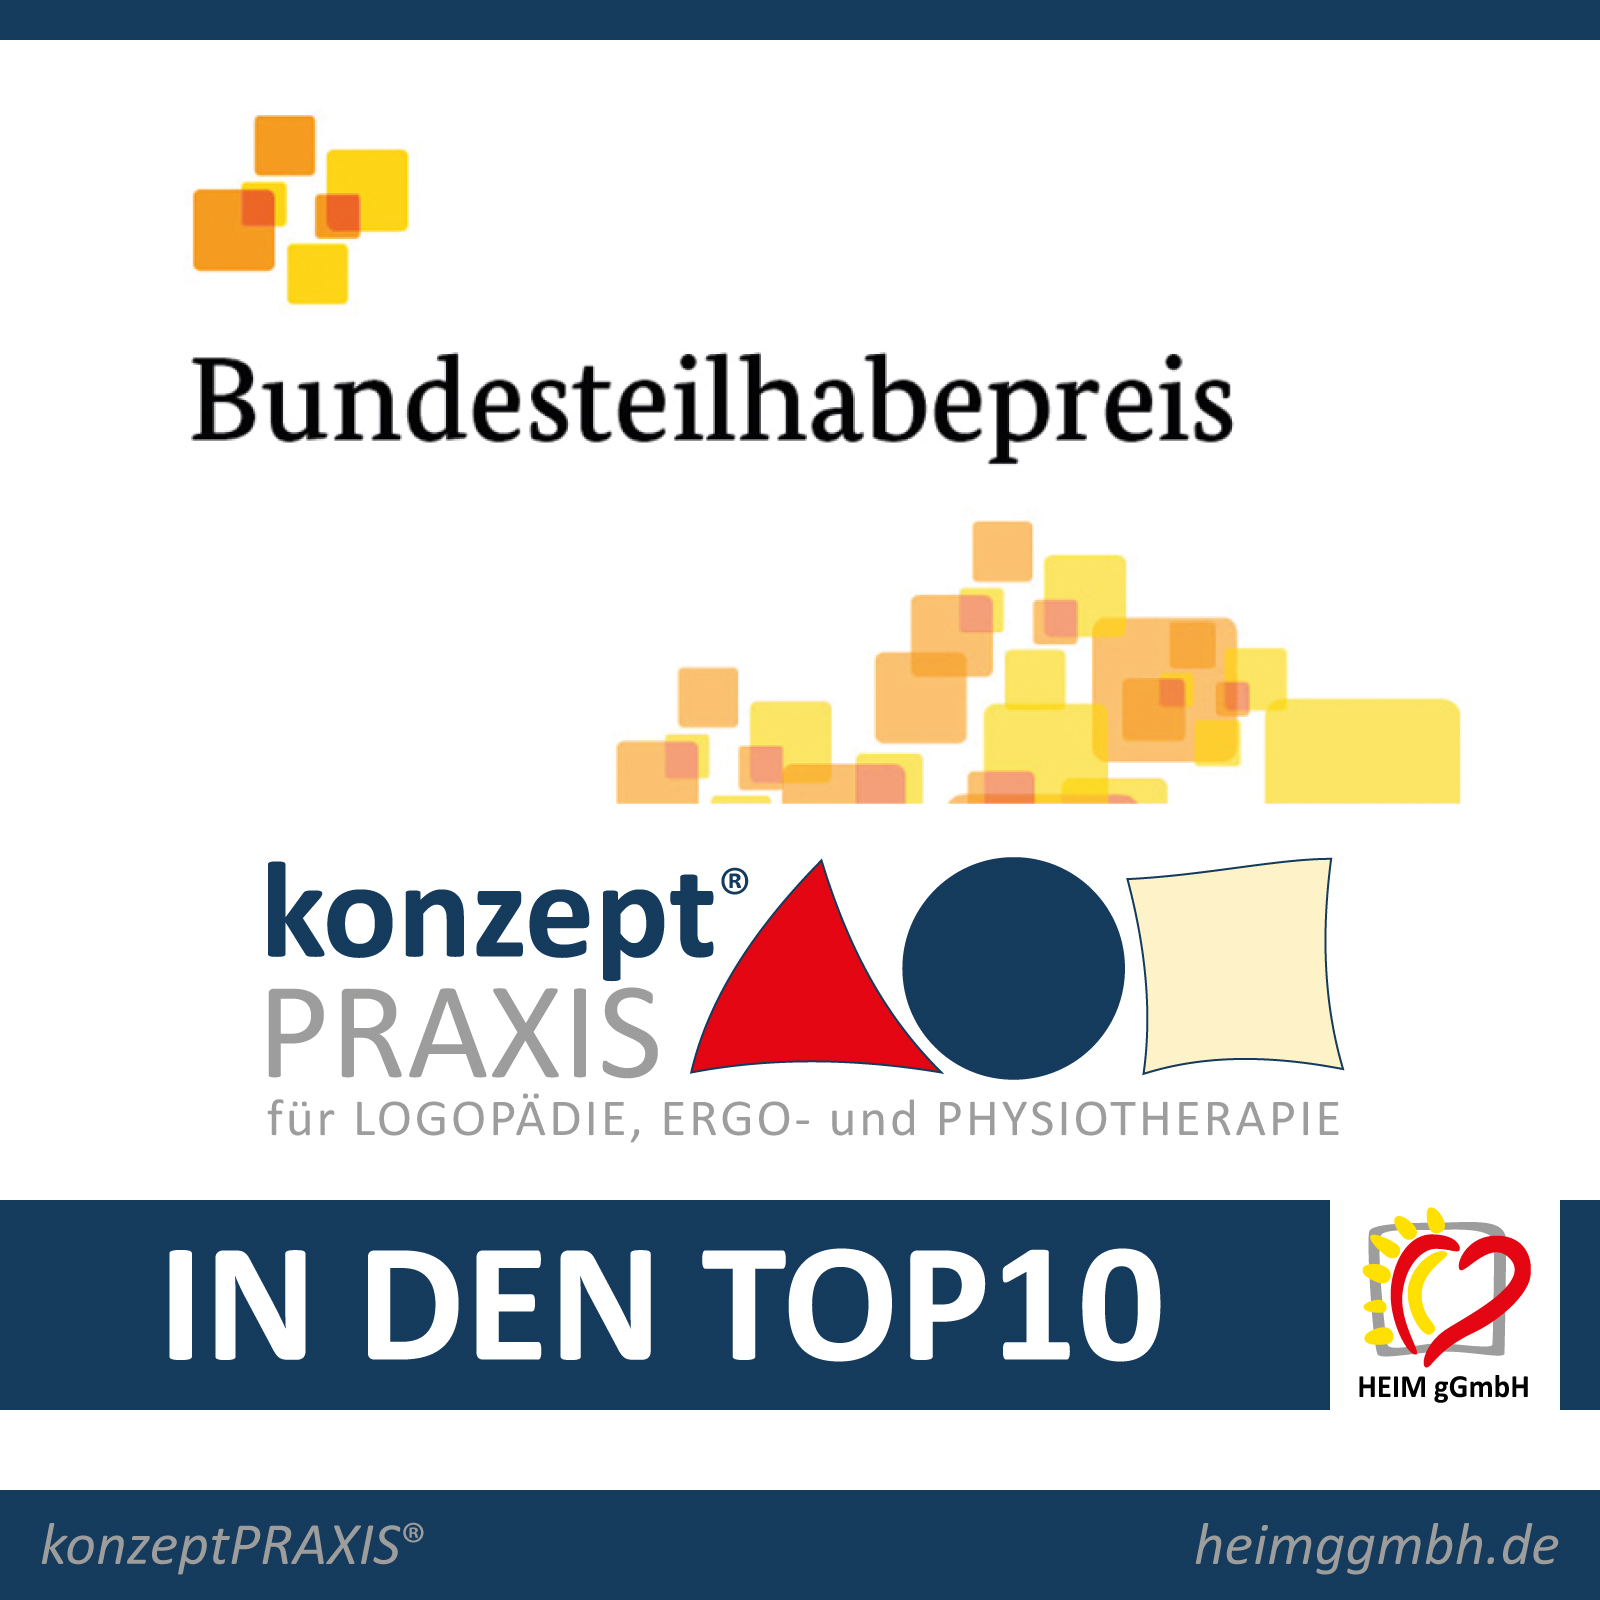 Bundesteilhabepreis: Die konzeptPRAXIS® der HEIM gemeinnützigen GmbH aus Chemnitz in den Top-10 aller eingereichten Projekte